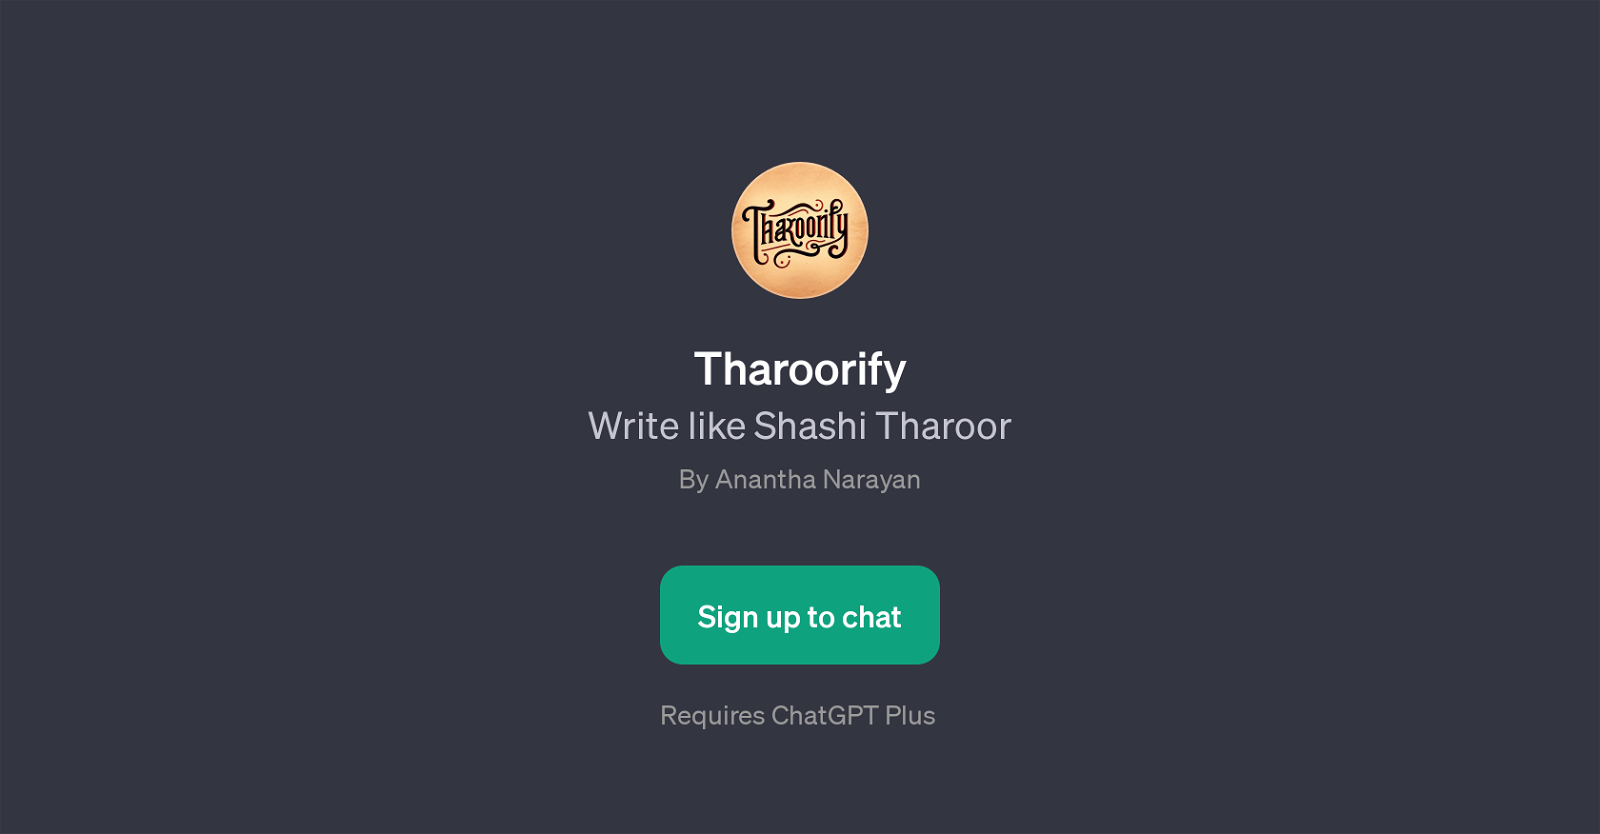 Tharoorify website